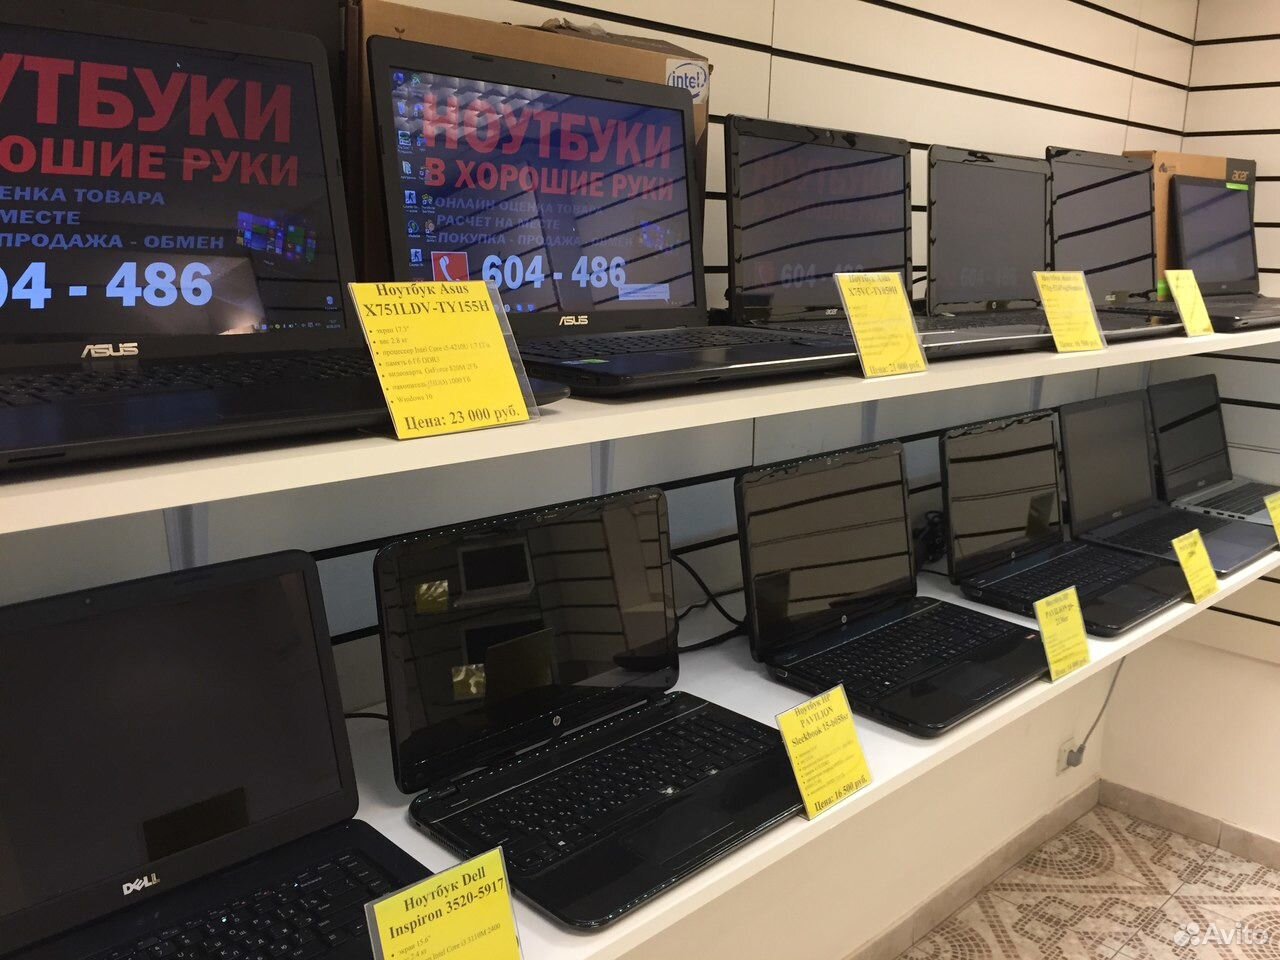 Купить Ноутбук В Новосибирске В Магазине